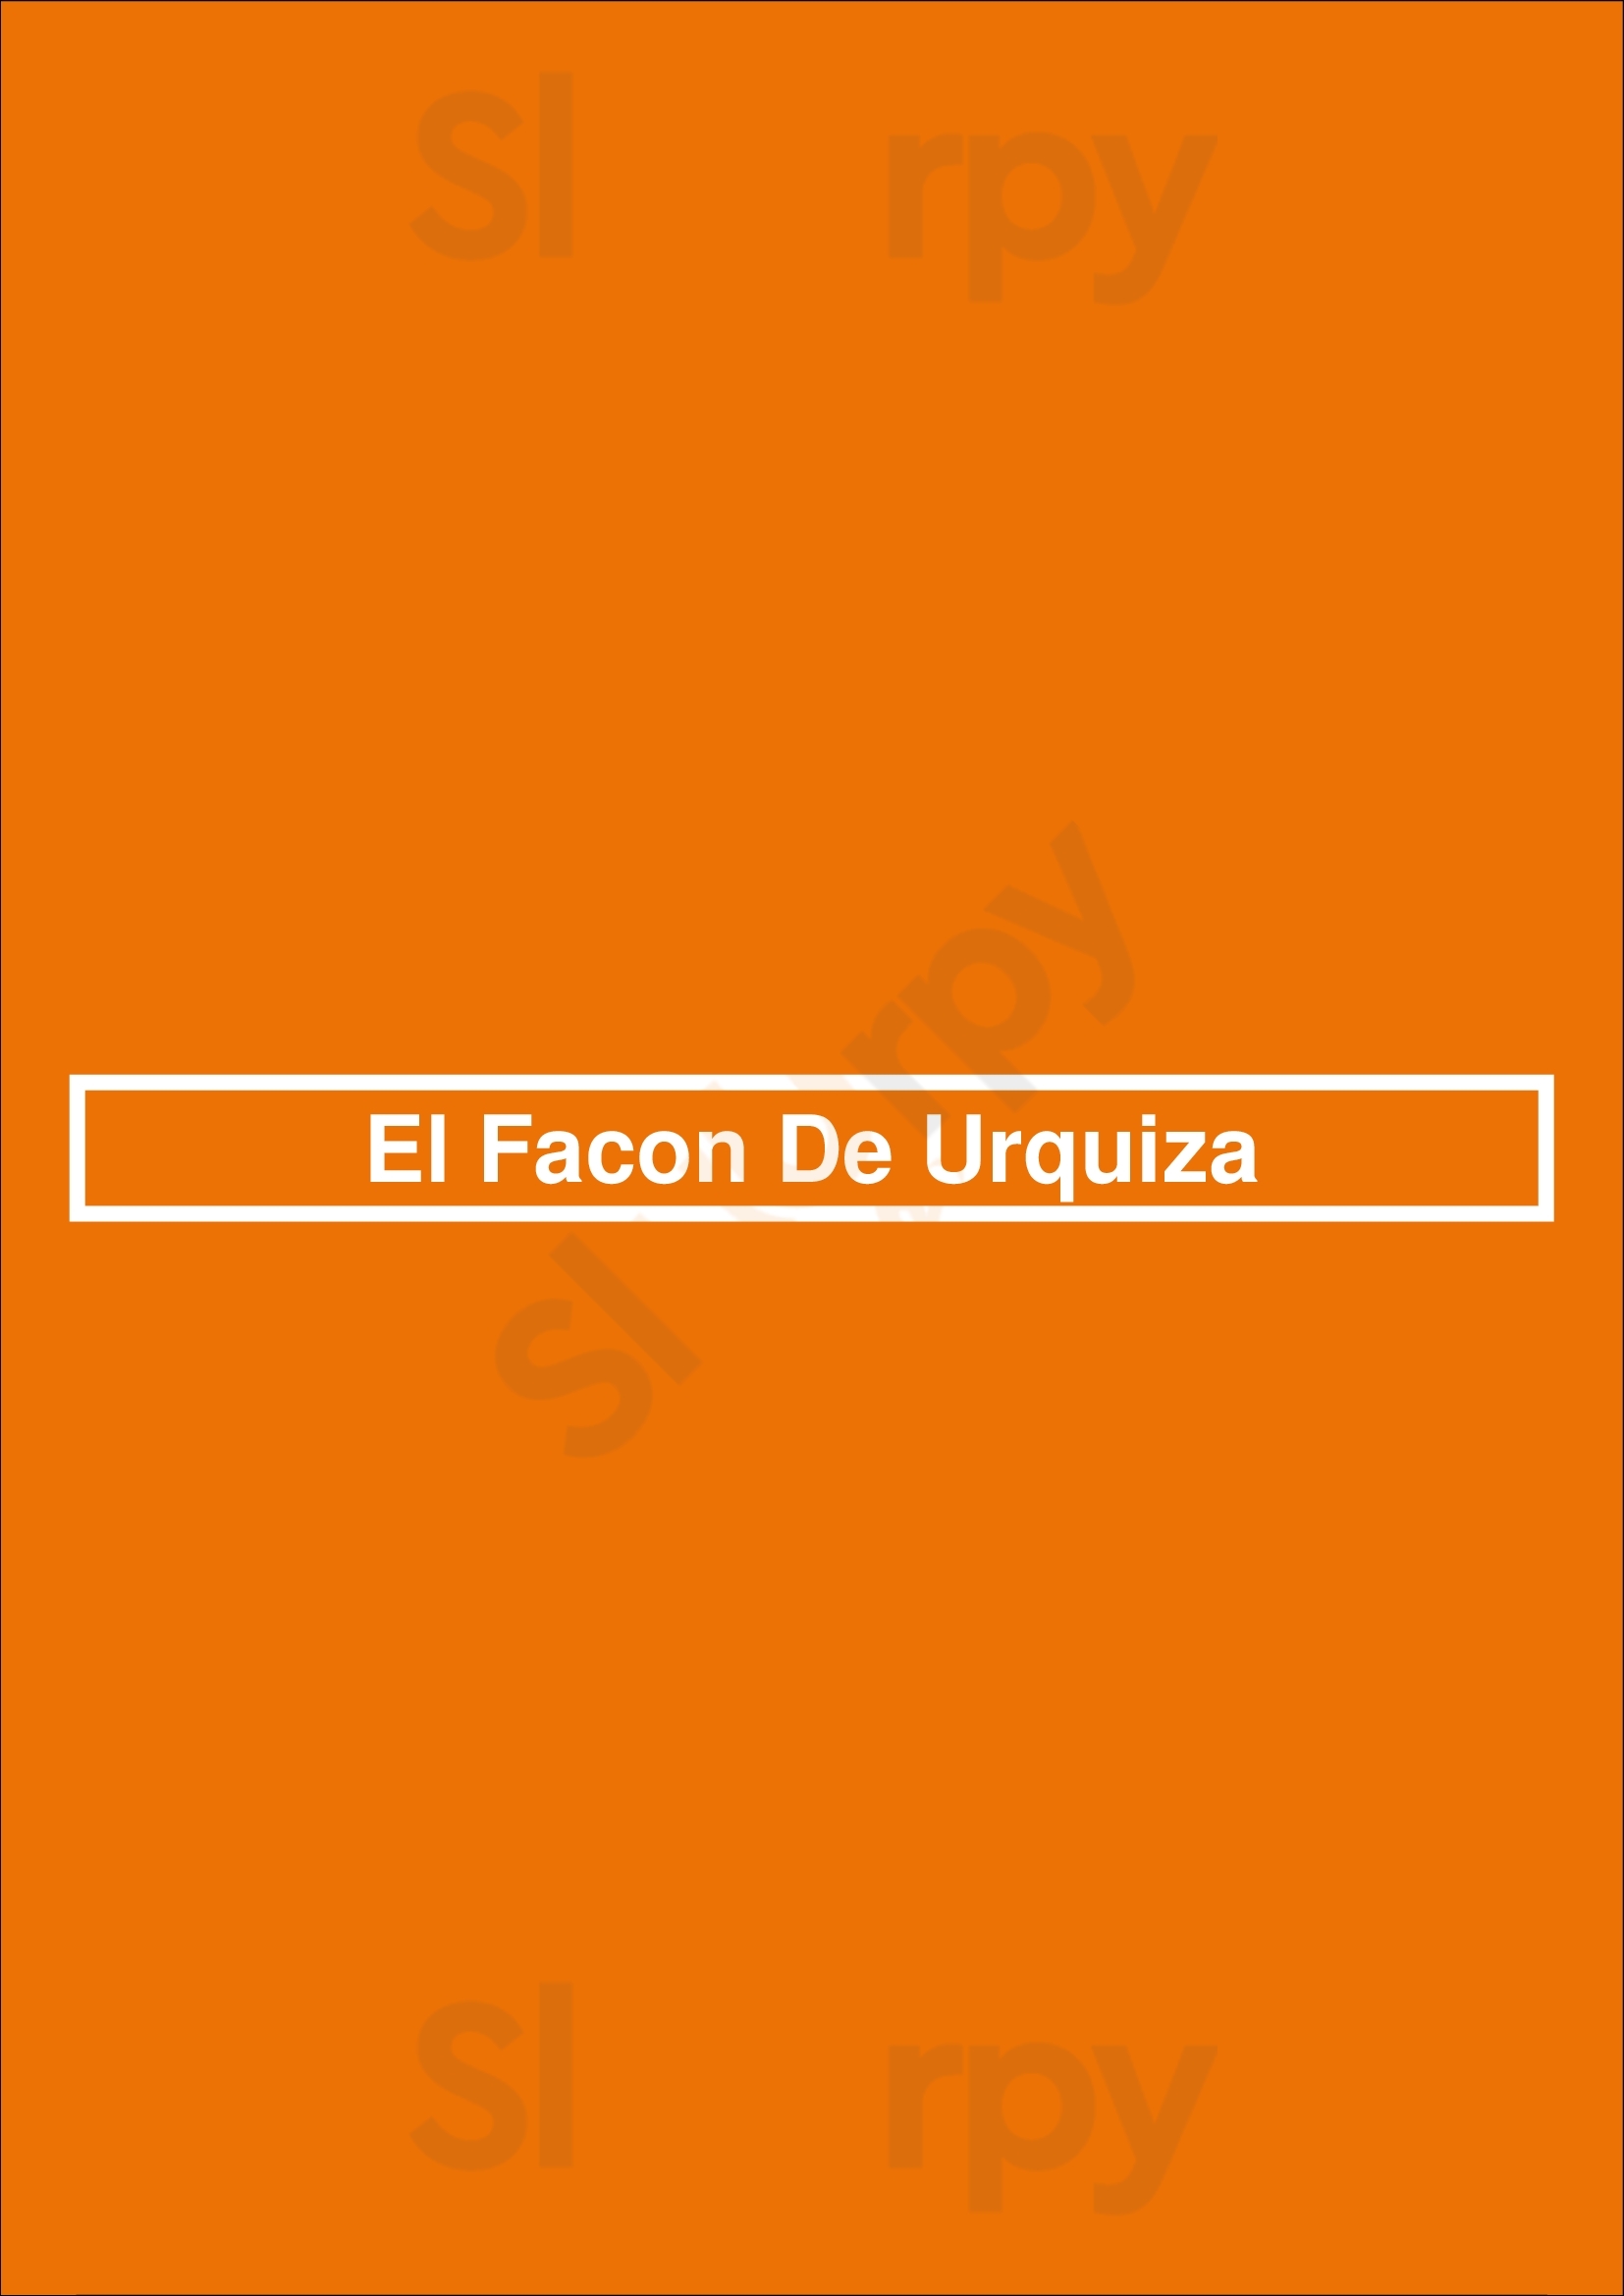 El Facón Grill Buenos Aires Menu - 1